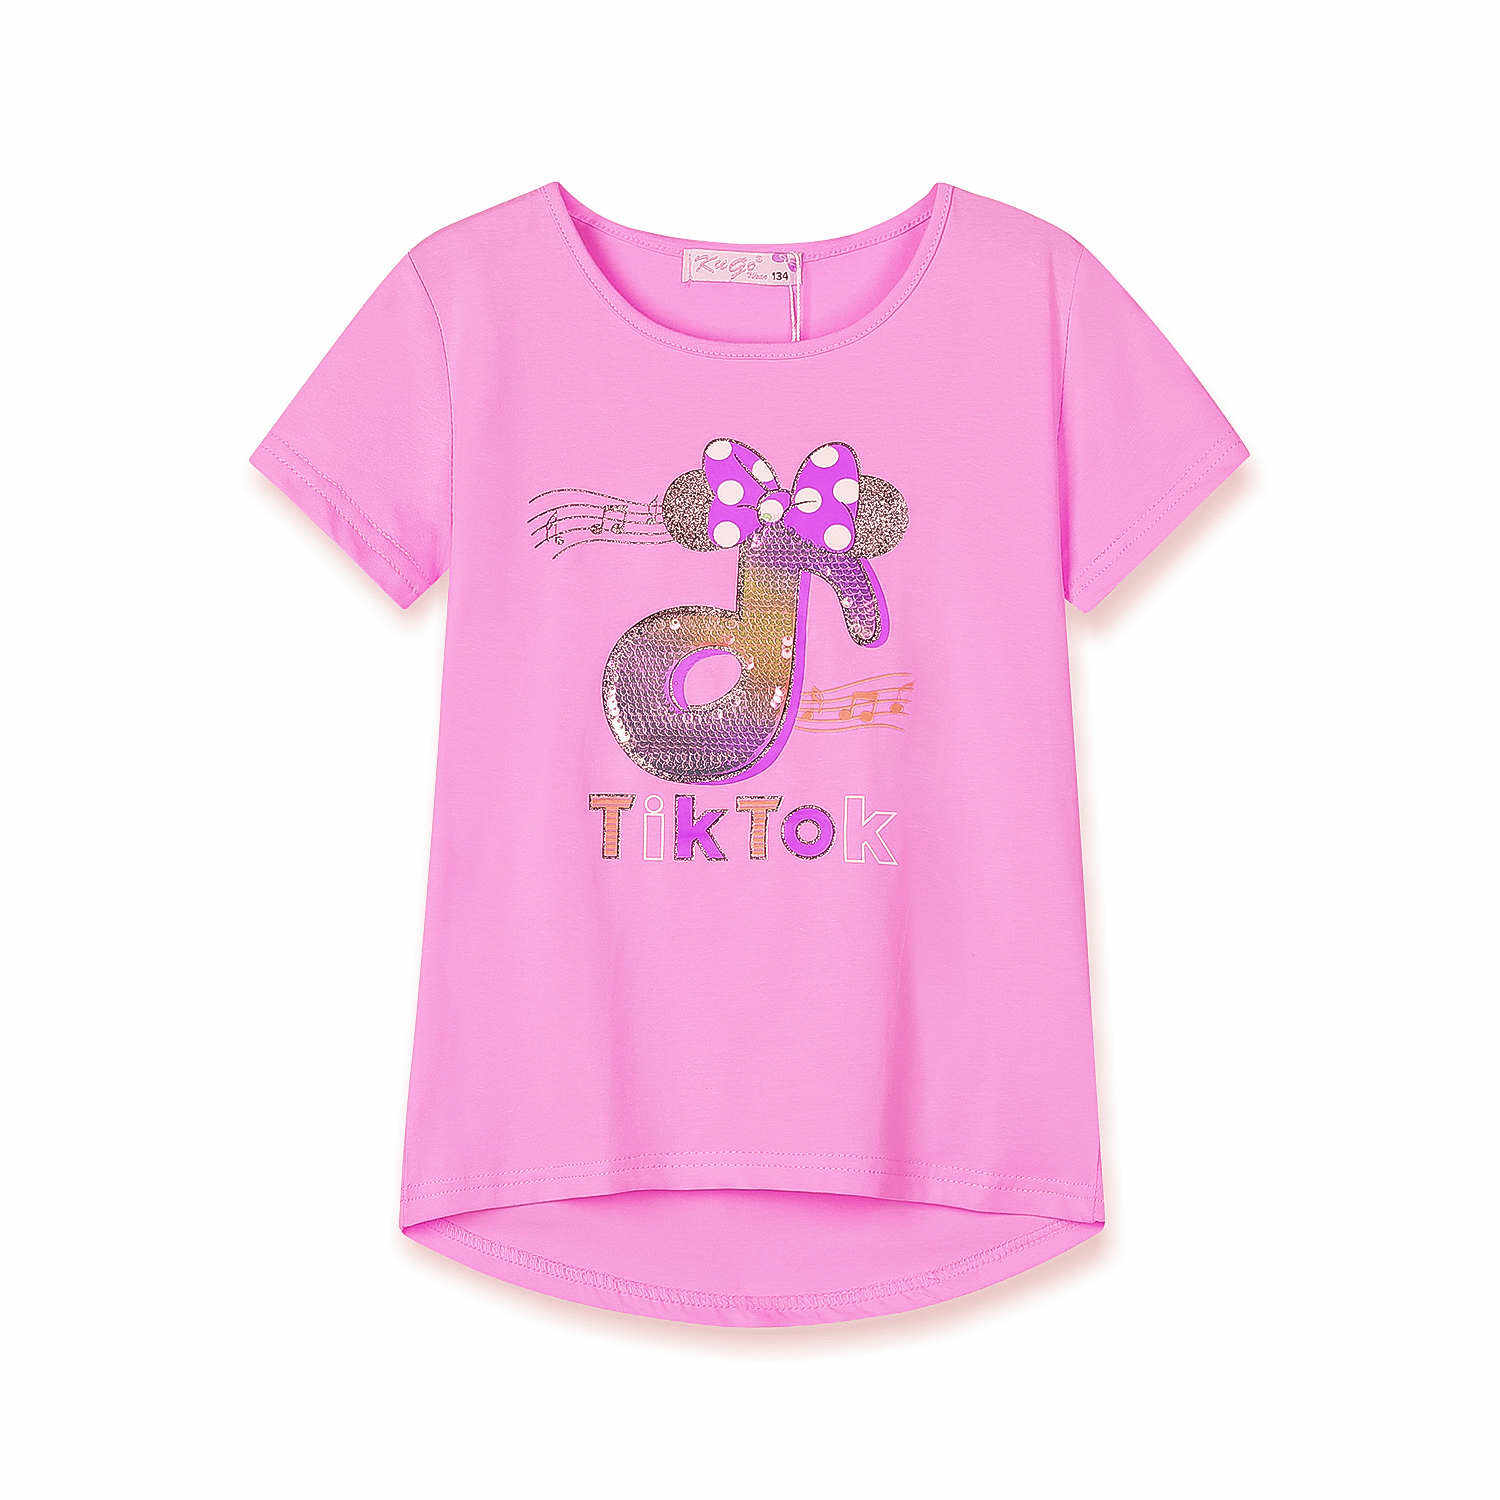 Dívčí triko s flitry - KUGO WK0803, světle růžová Barva: Růžová světlejší, Velikost: 116